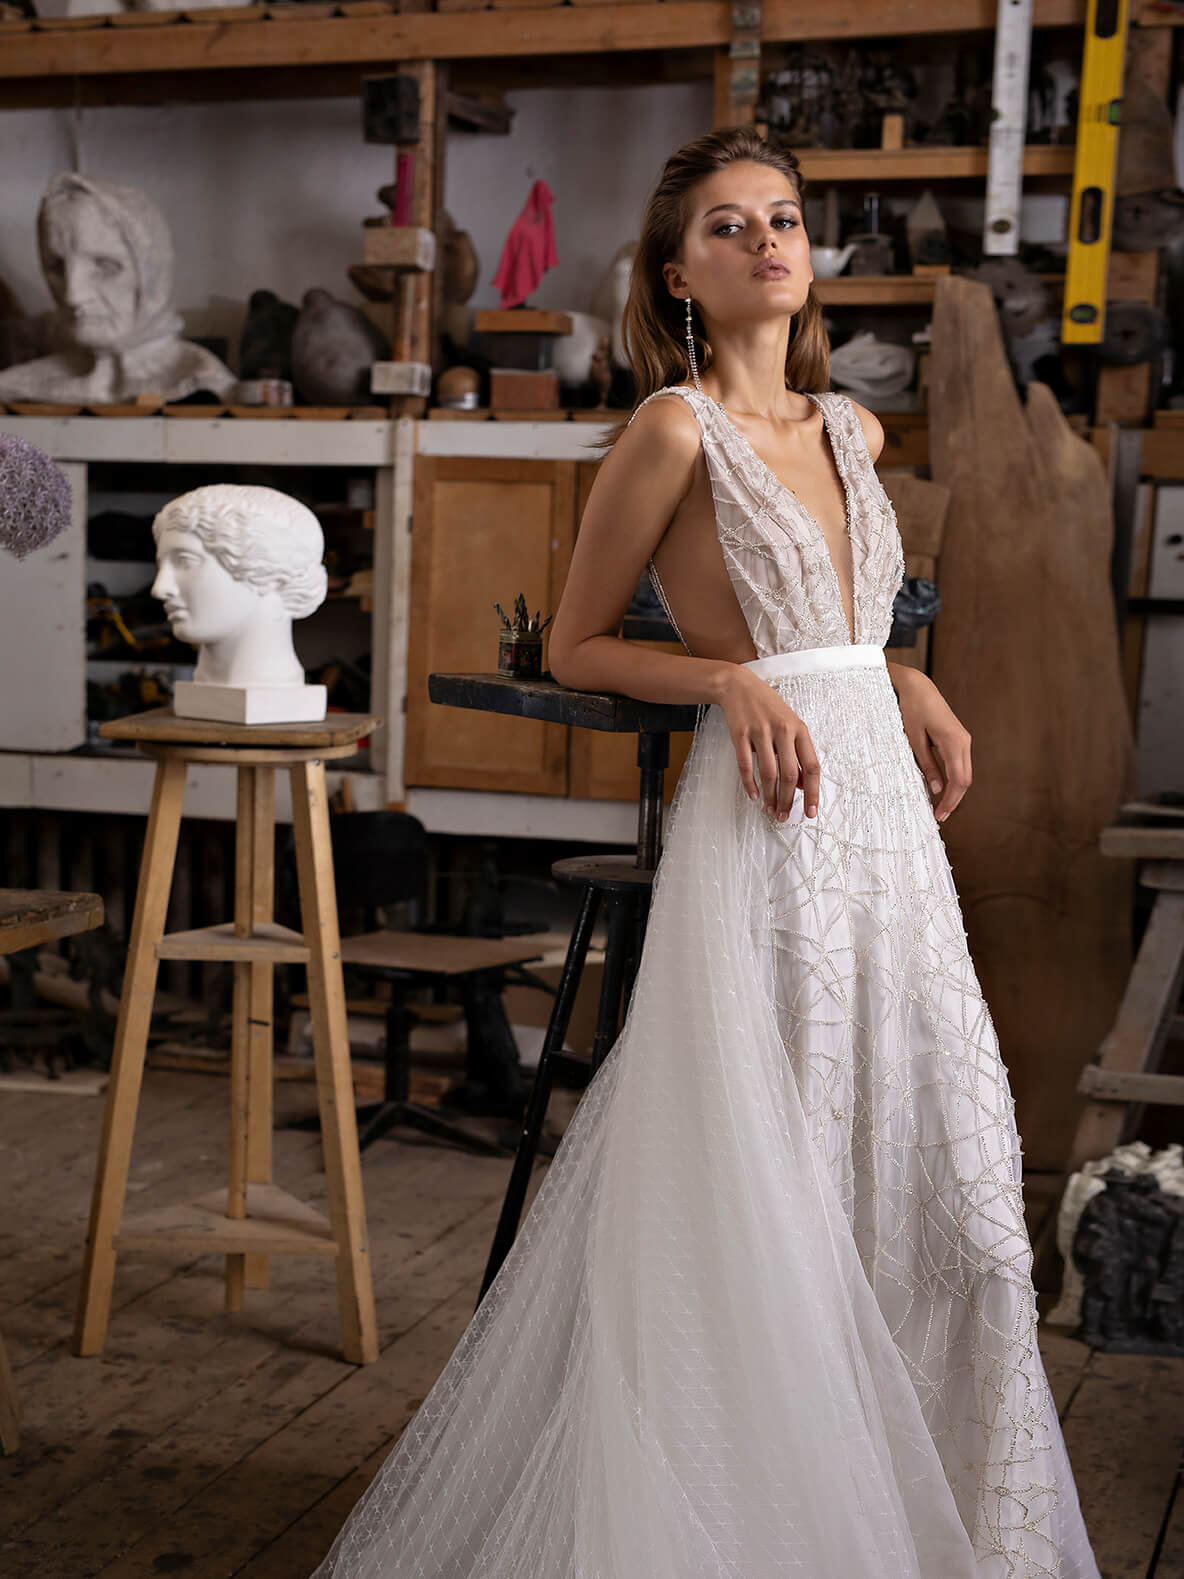 A-line wedding dress with deep v-neckline from Rara Avis Designer 1